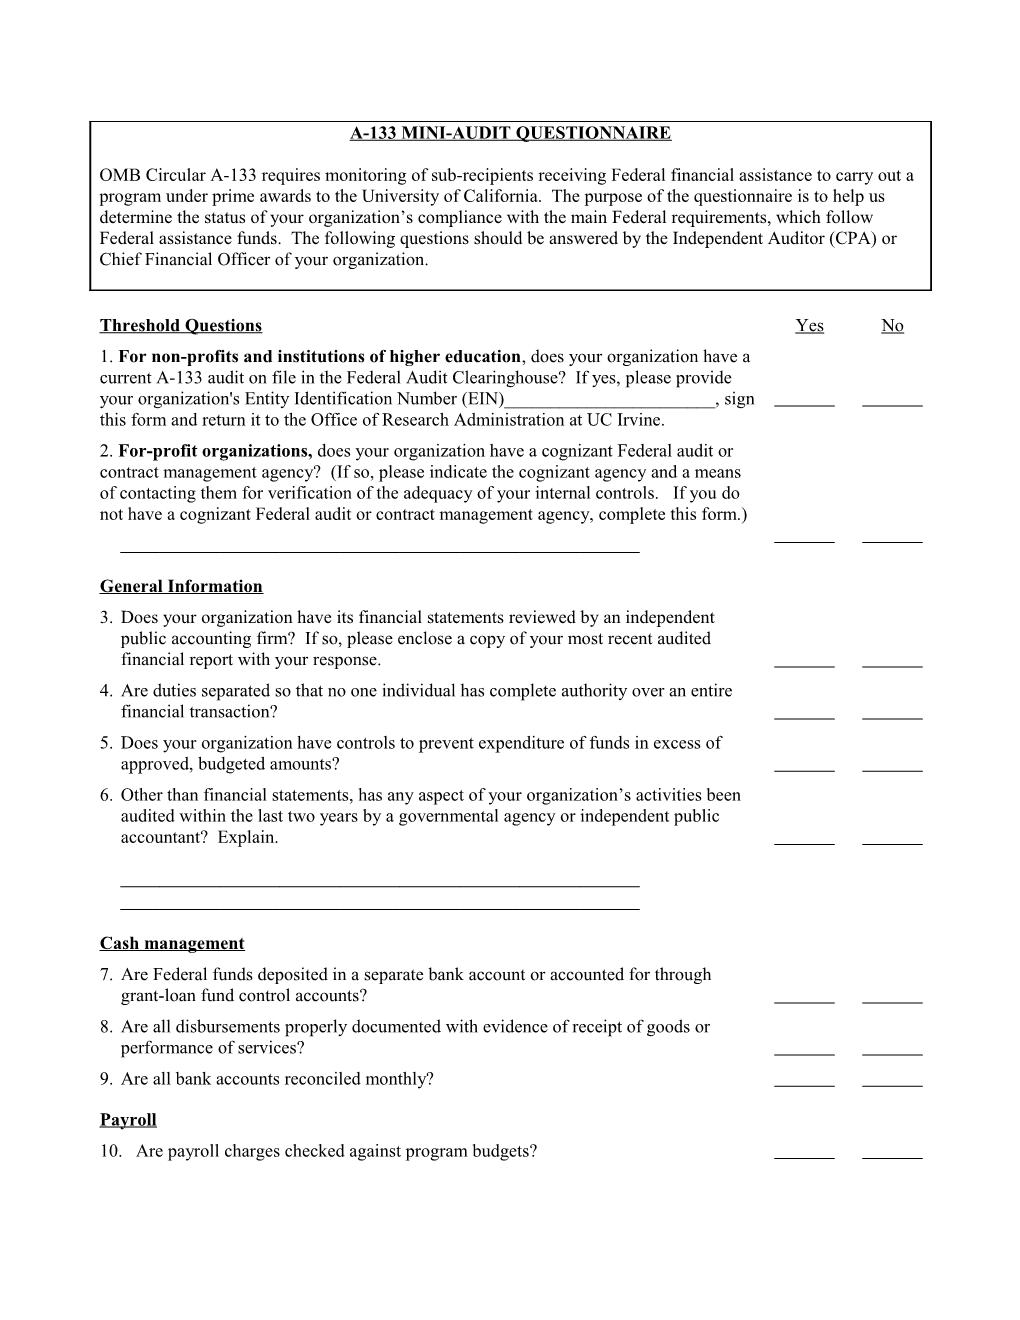 A-133 Mini-Audit Questionnaire